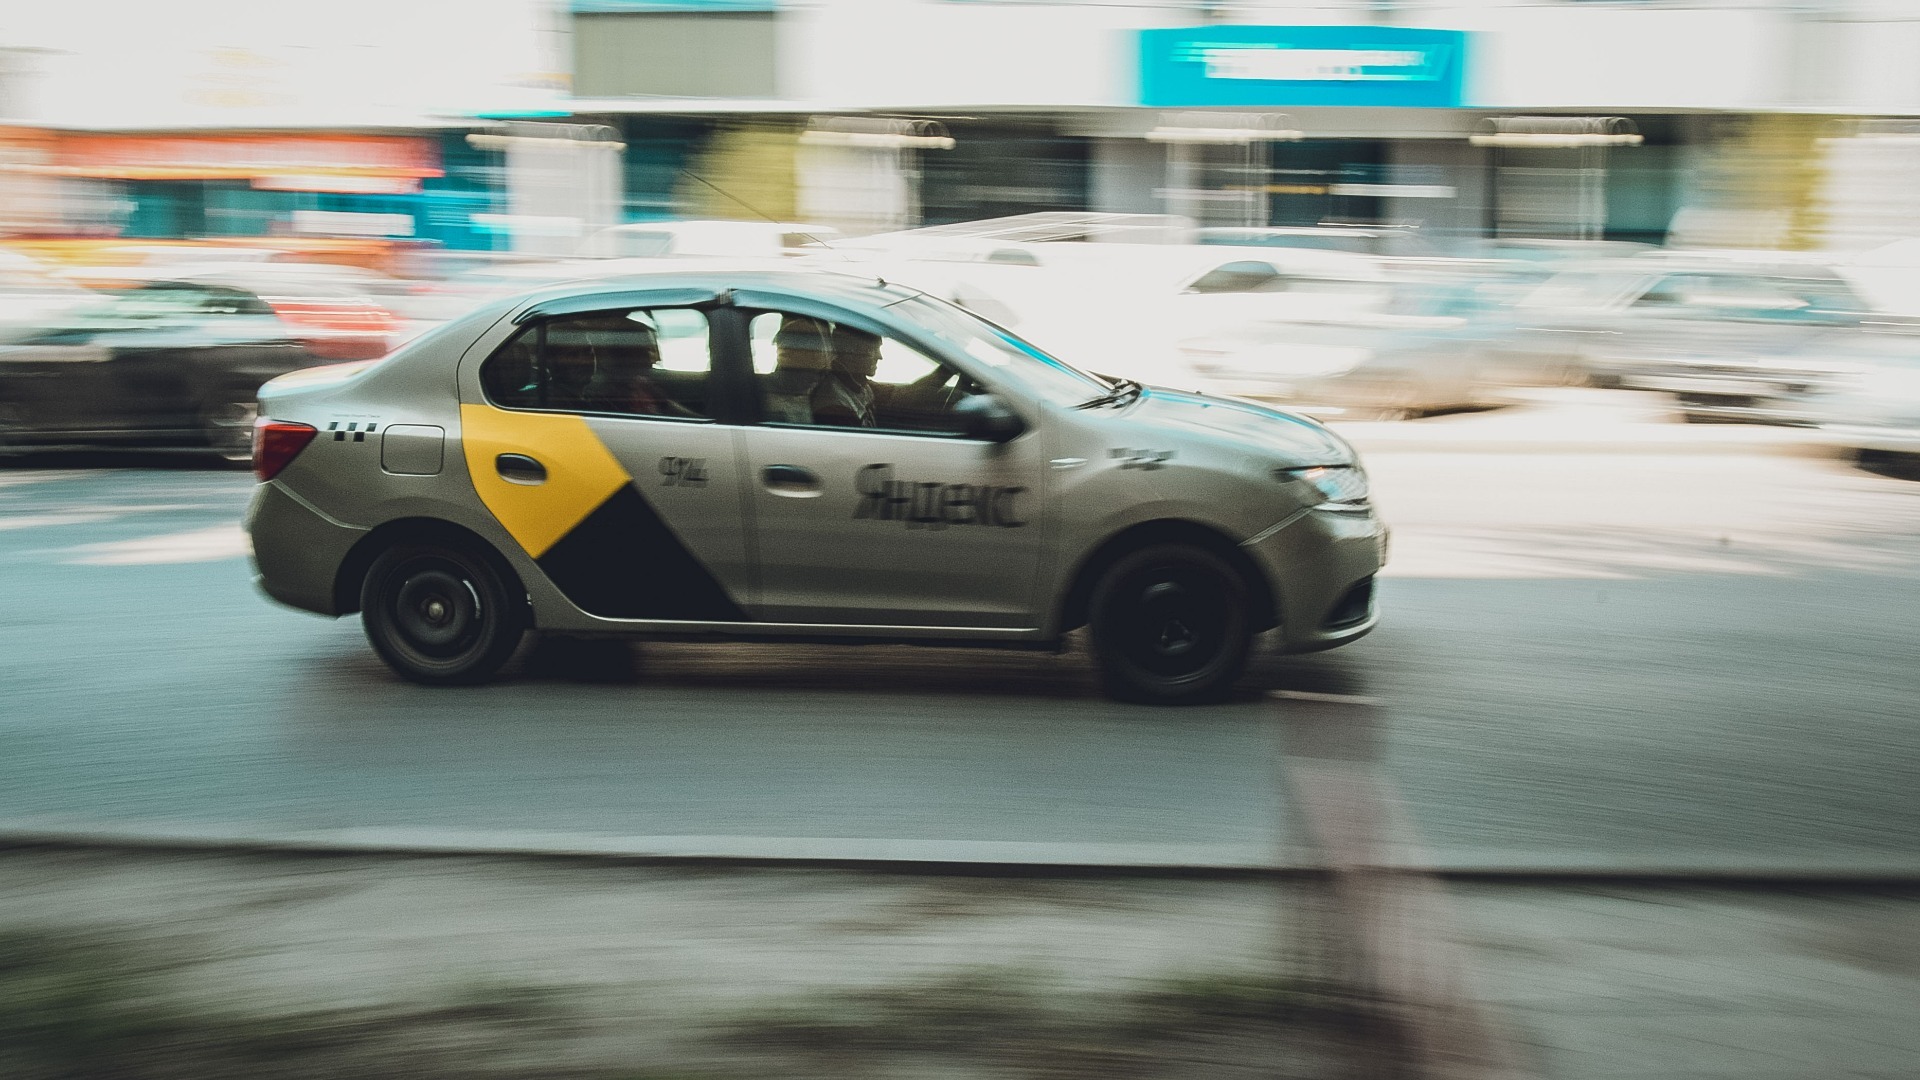 Яндекс Такси в Новосибирске не всегда работают идеально.